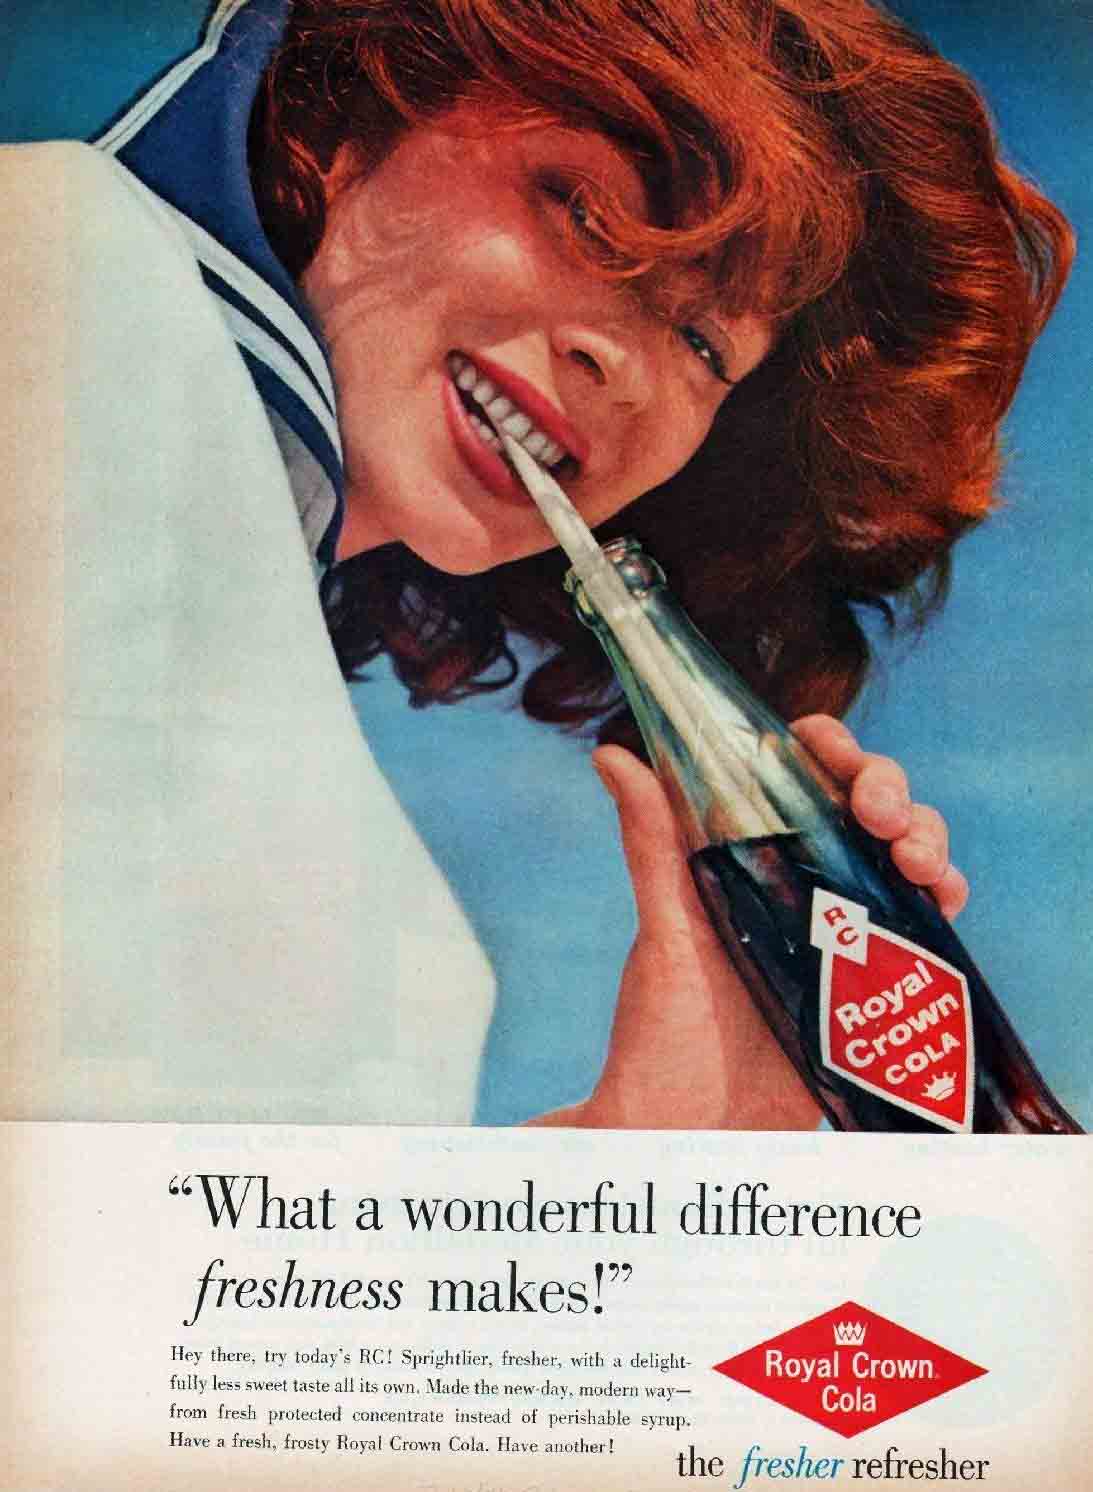 Parfois, un Cigare est PAS Juste un Cigare: Phalliques, des sous-entendus dans le Vintage Publicité